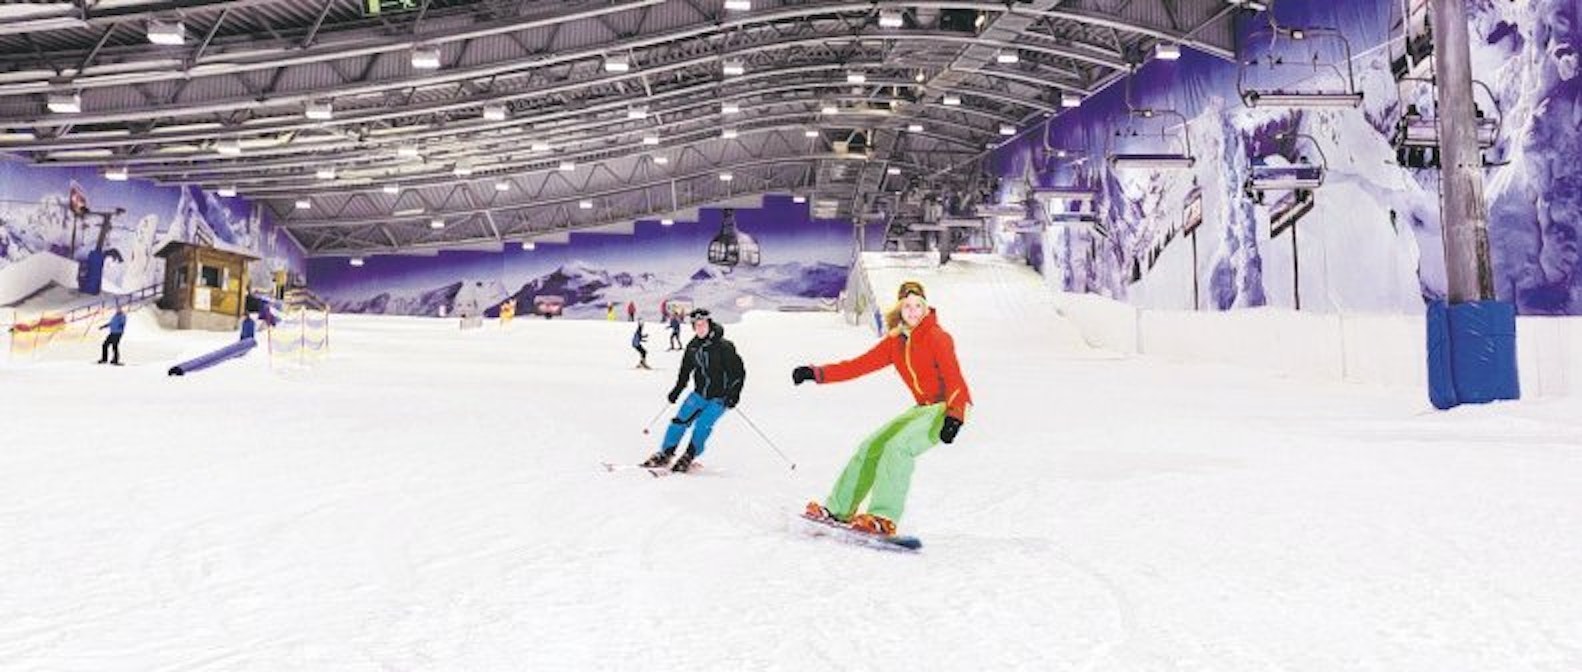 Ski-Indoorhalle Neuss